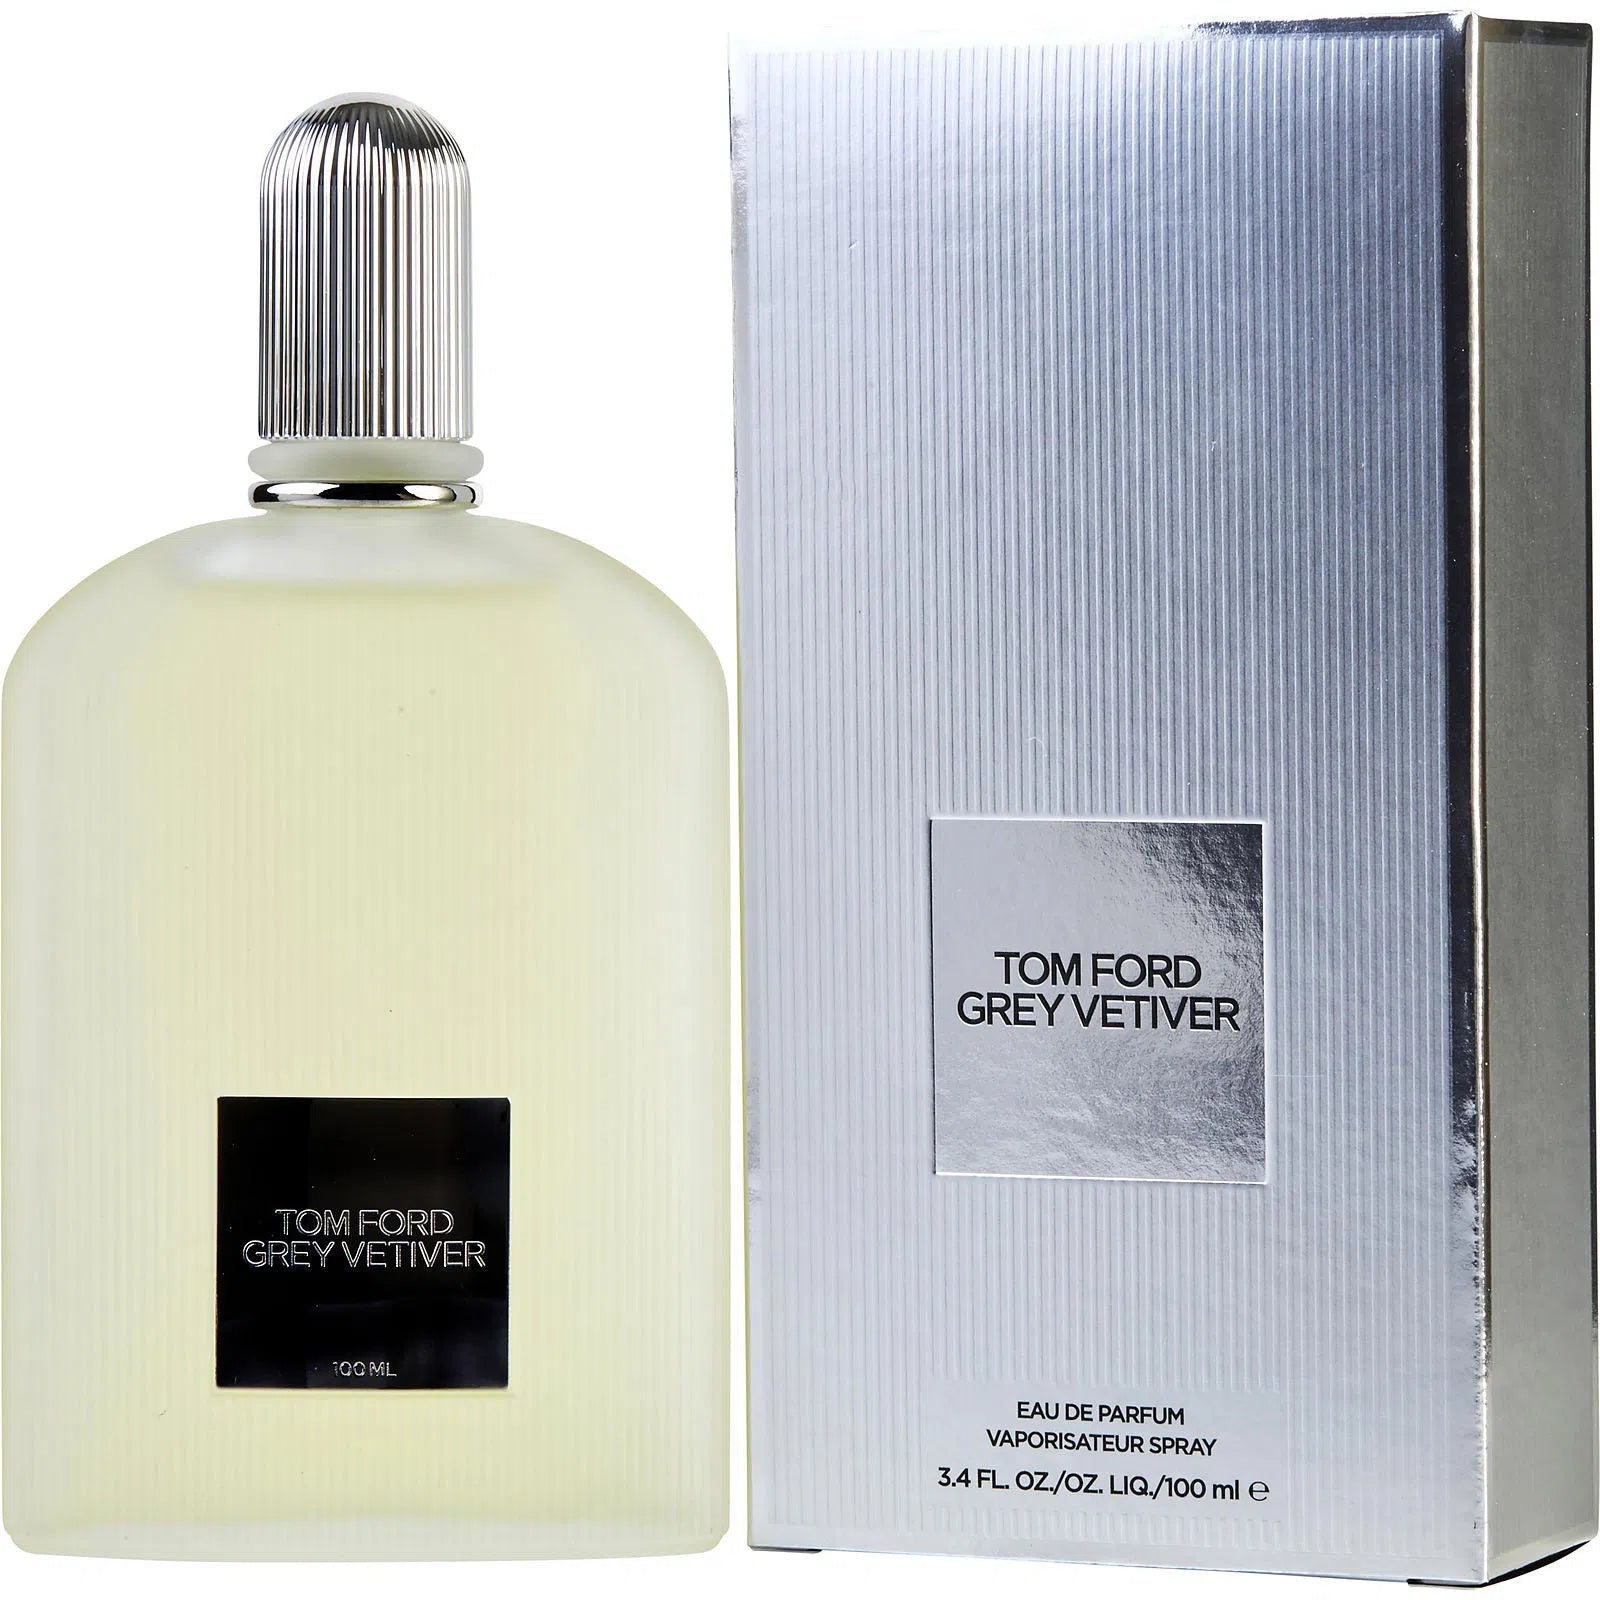 Perfume Tom Ford Grey Vetiver EDP (M) / 100 ml - 888066007795- Prive Perfumes Honduras